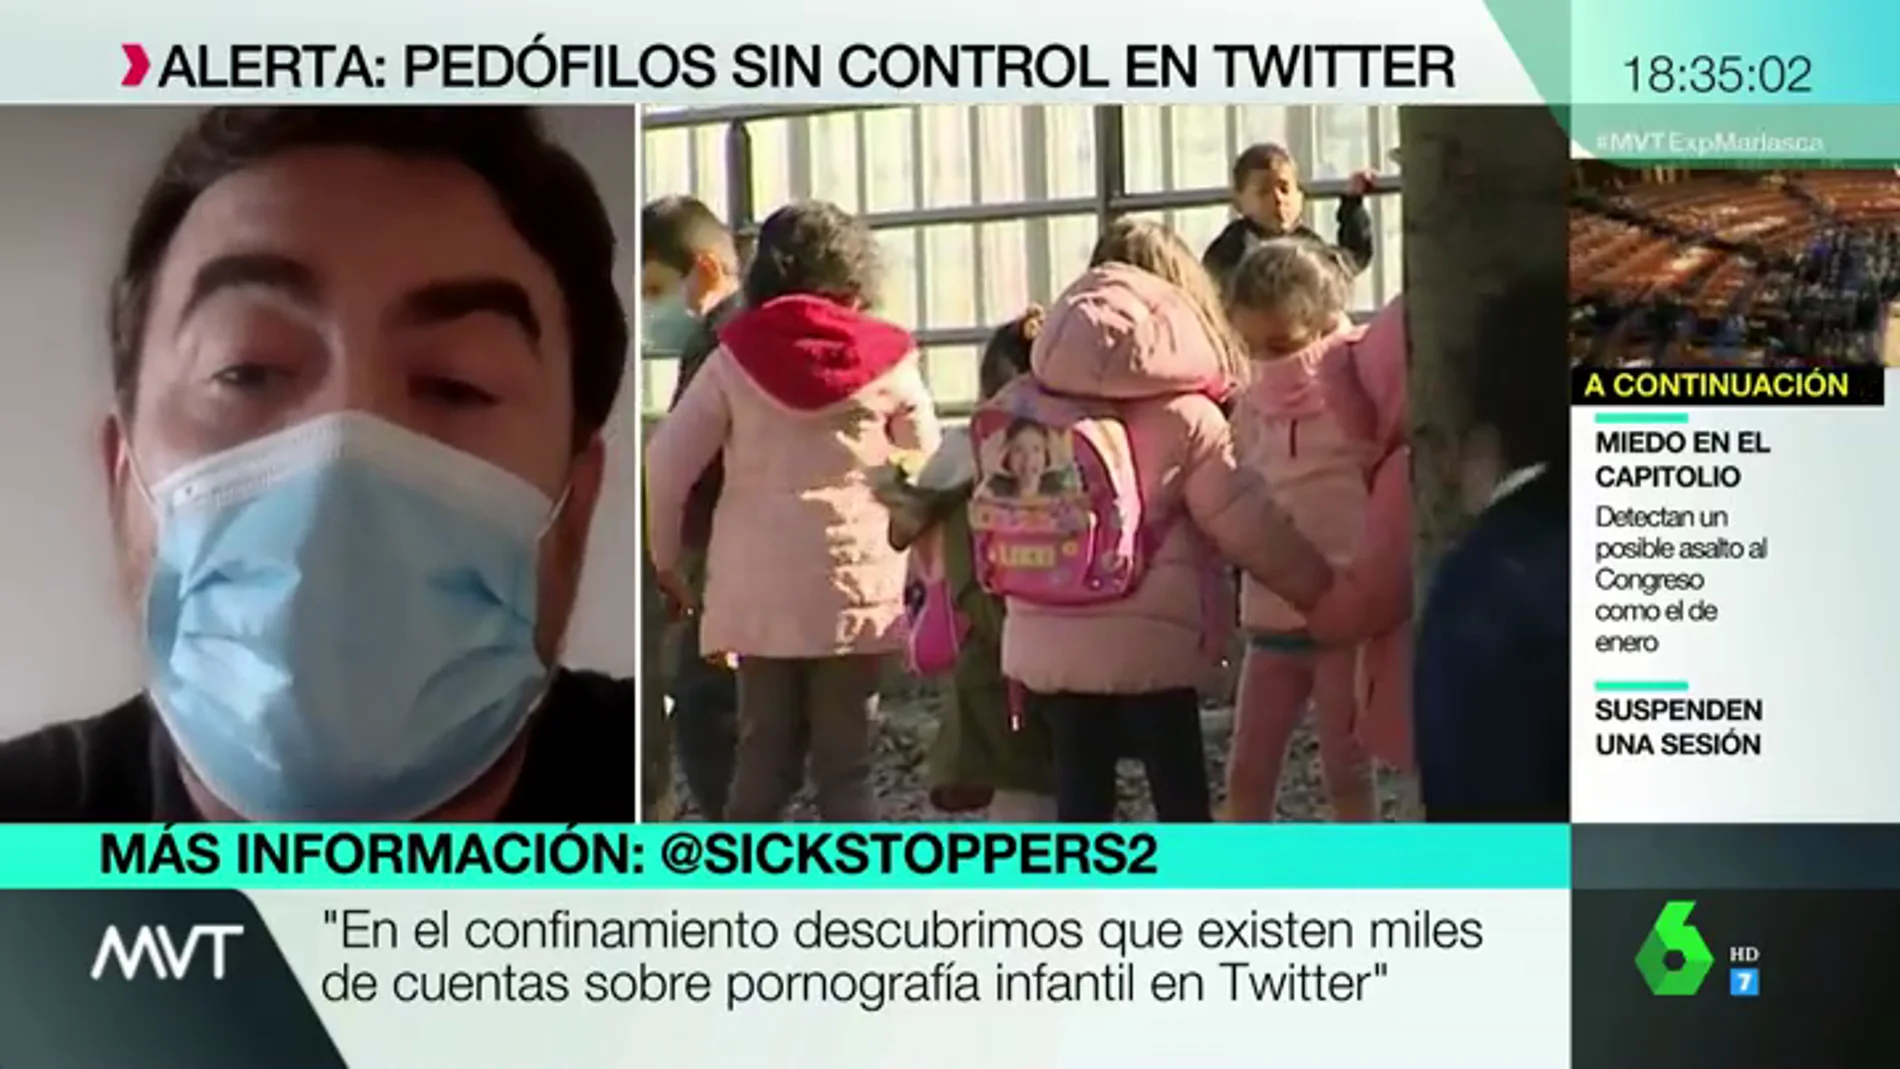 'Sickstoppers', los voluntarios que se dedican a denunciar pornografía infantil en Twitter: "Hay miles de cuentas con esos contenidos"